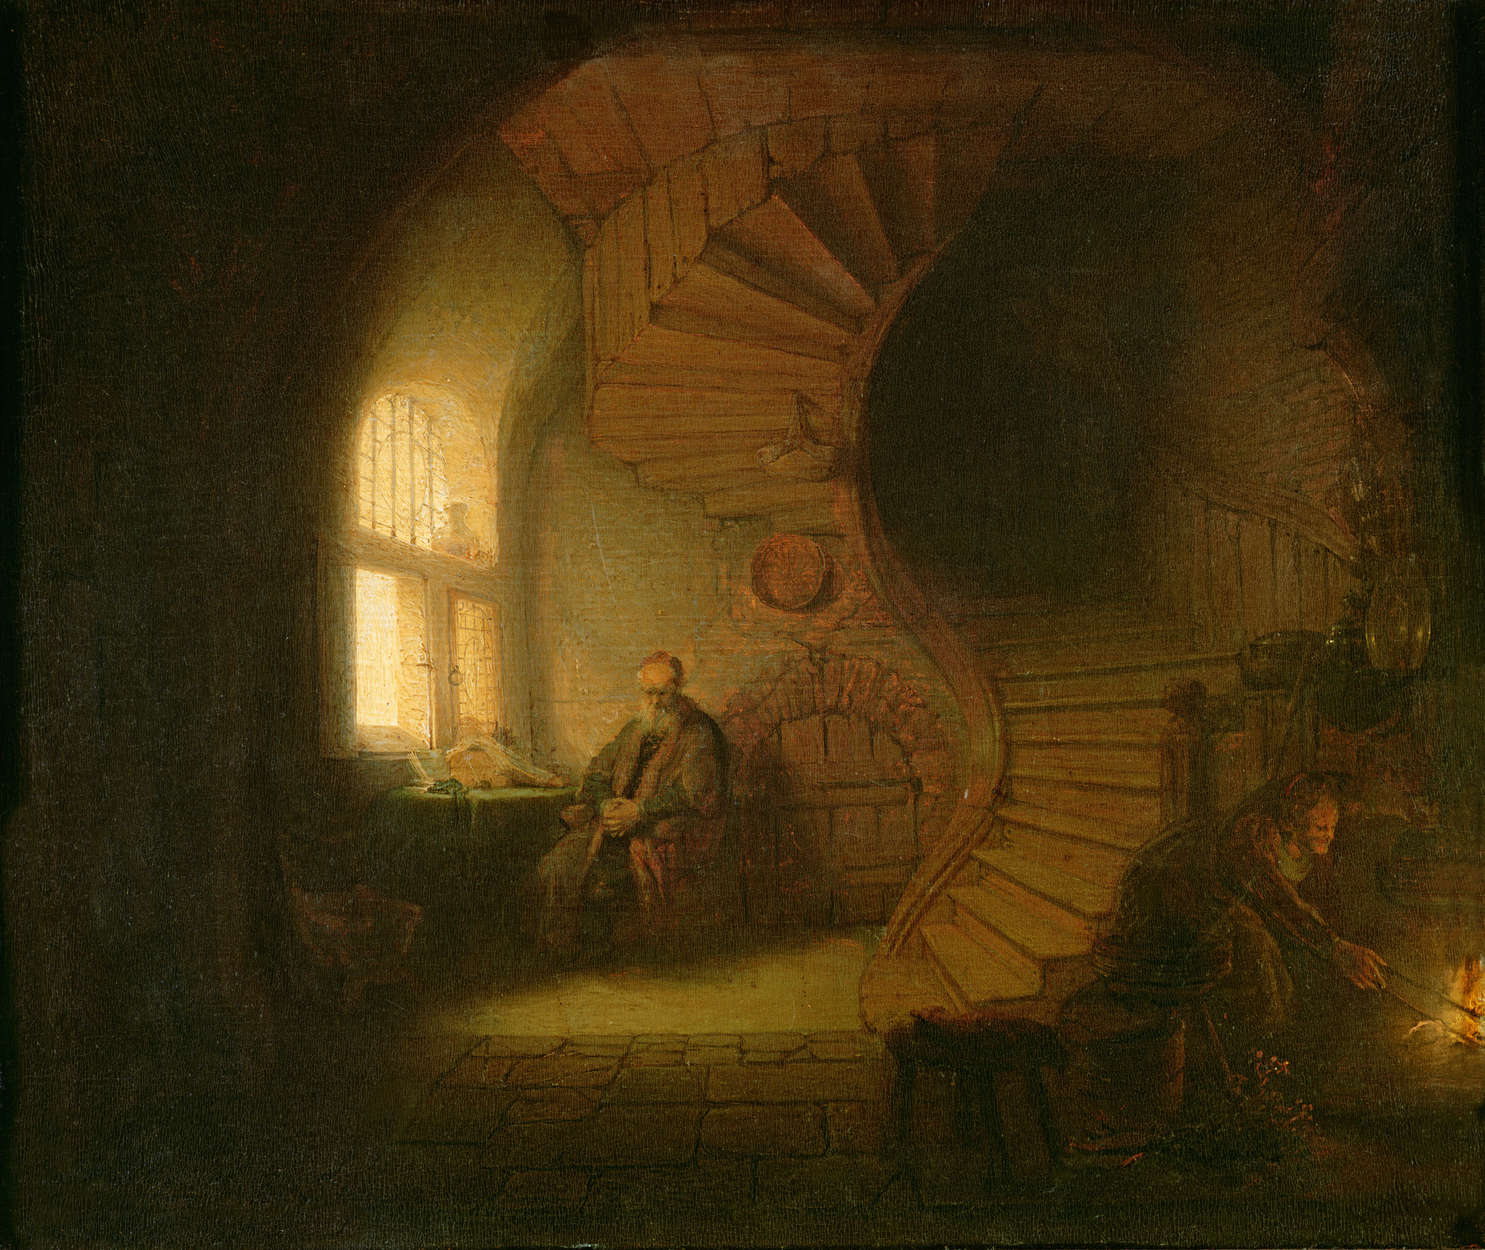             Photo wallpaper "Philosopher in meditation" by Rembrandt van Rijn
        